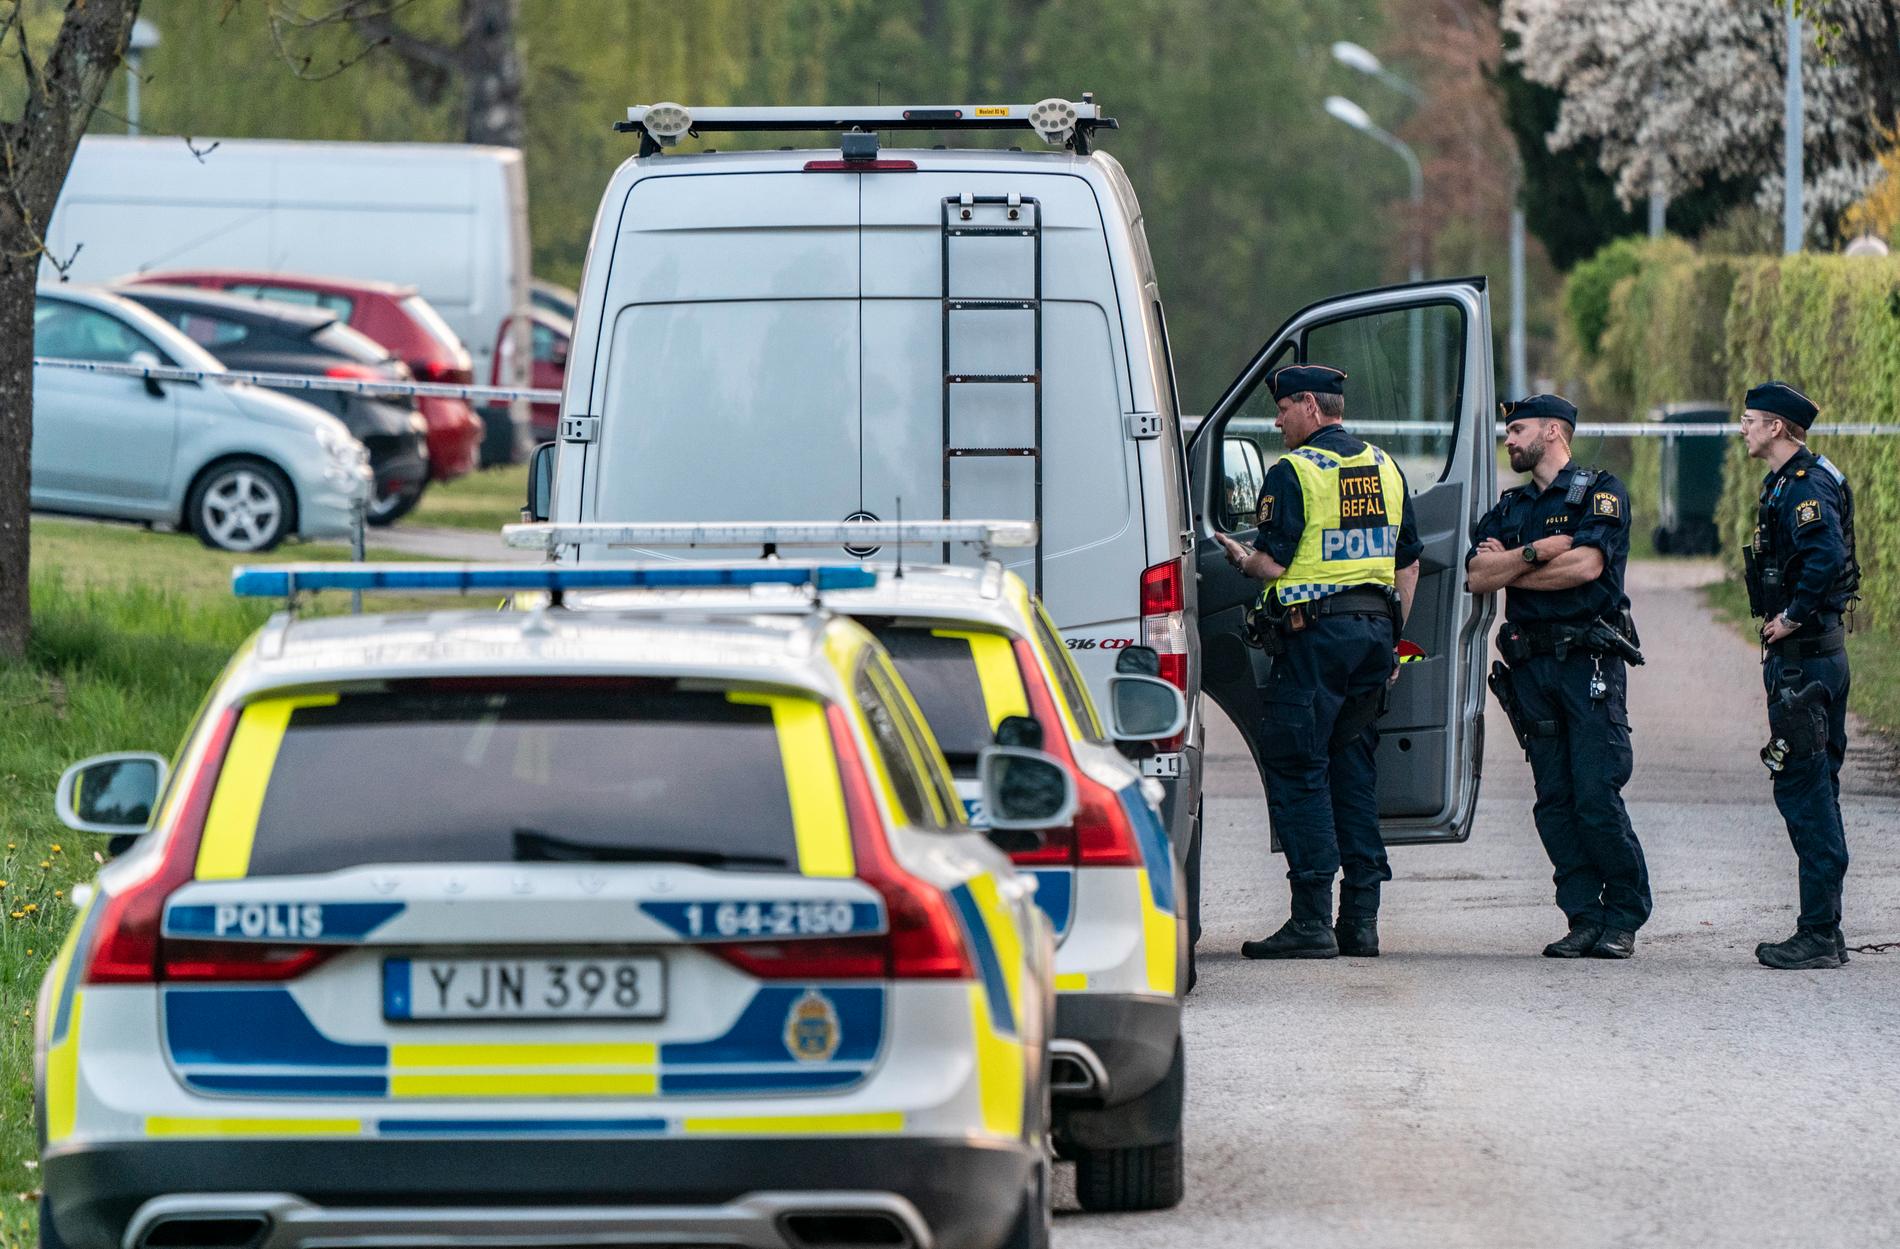 En förundersökning om mord har inletts sedan en död man hittats i en bäck utanför skånska Hörby.